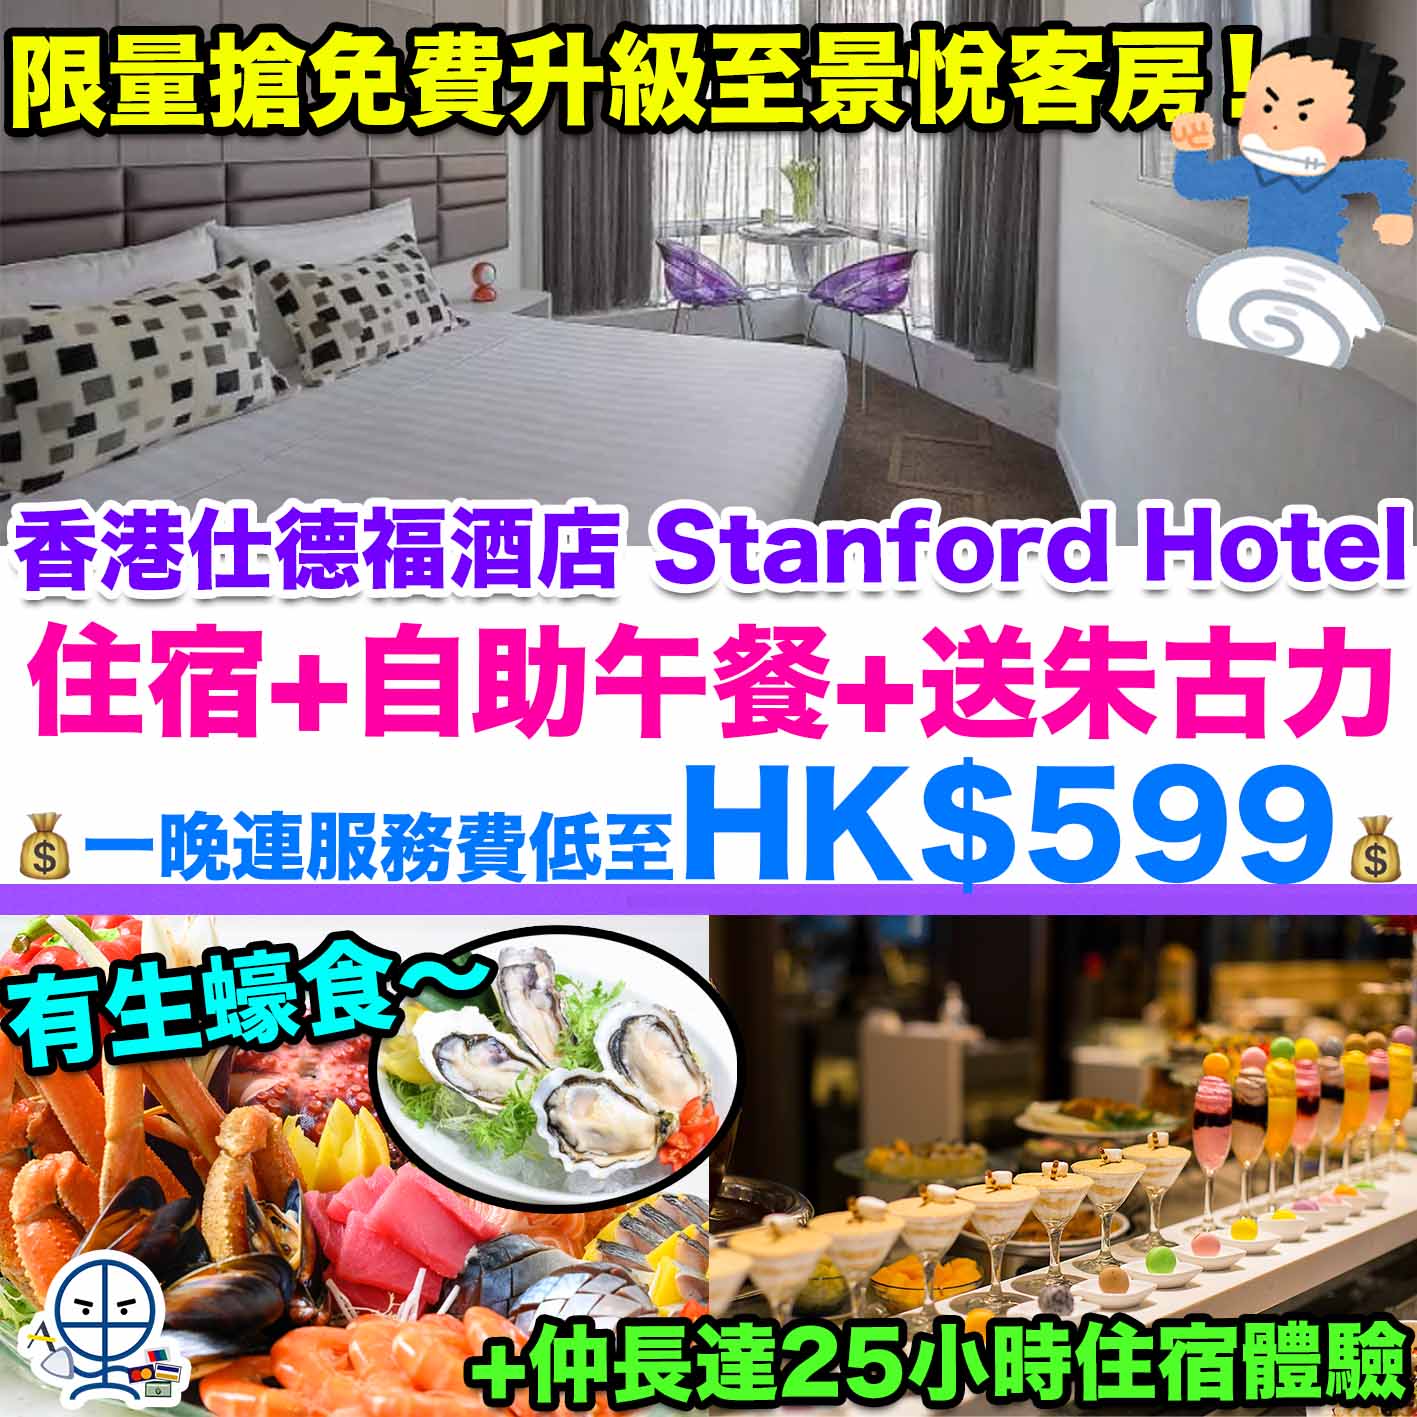 香港仕德福酒店 Stanford Hotel (Mongkok)Staycation優惠-staycation-香港酒店住宿優惠-抵玩套票